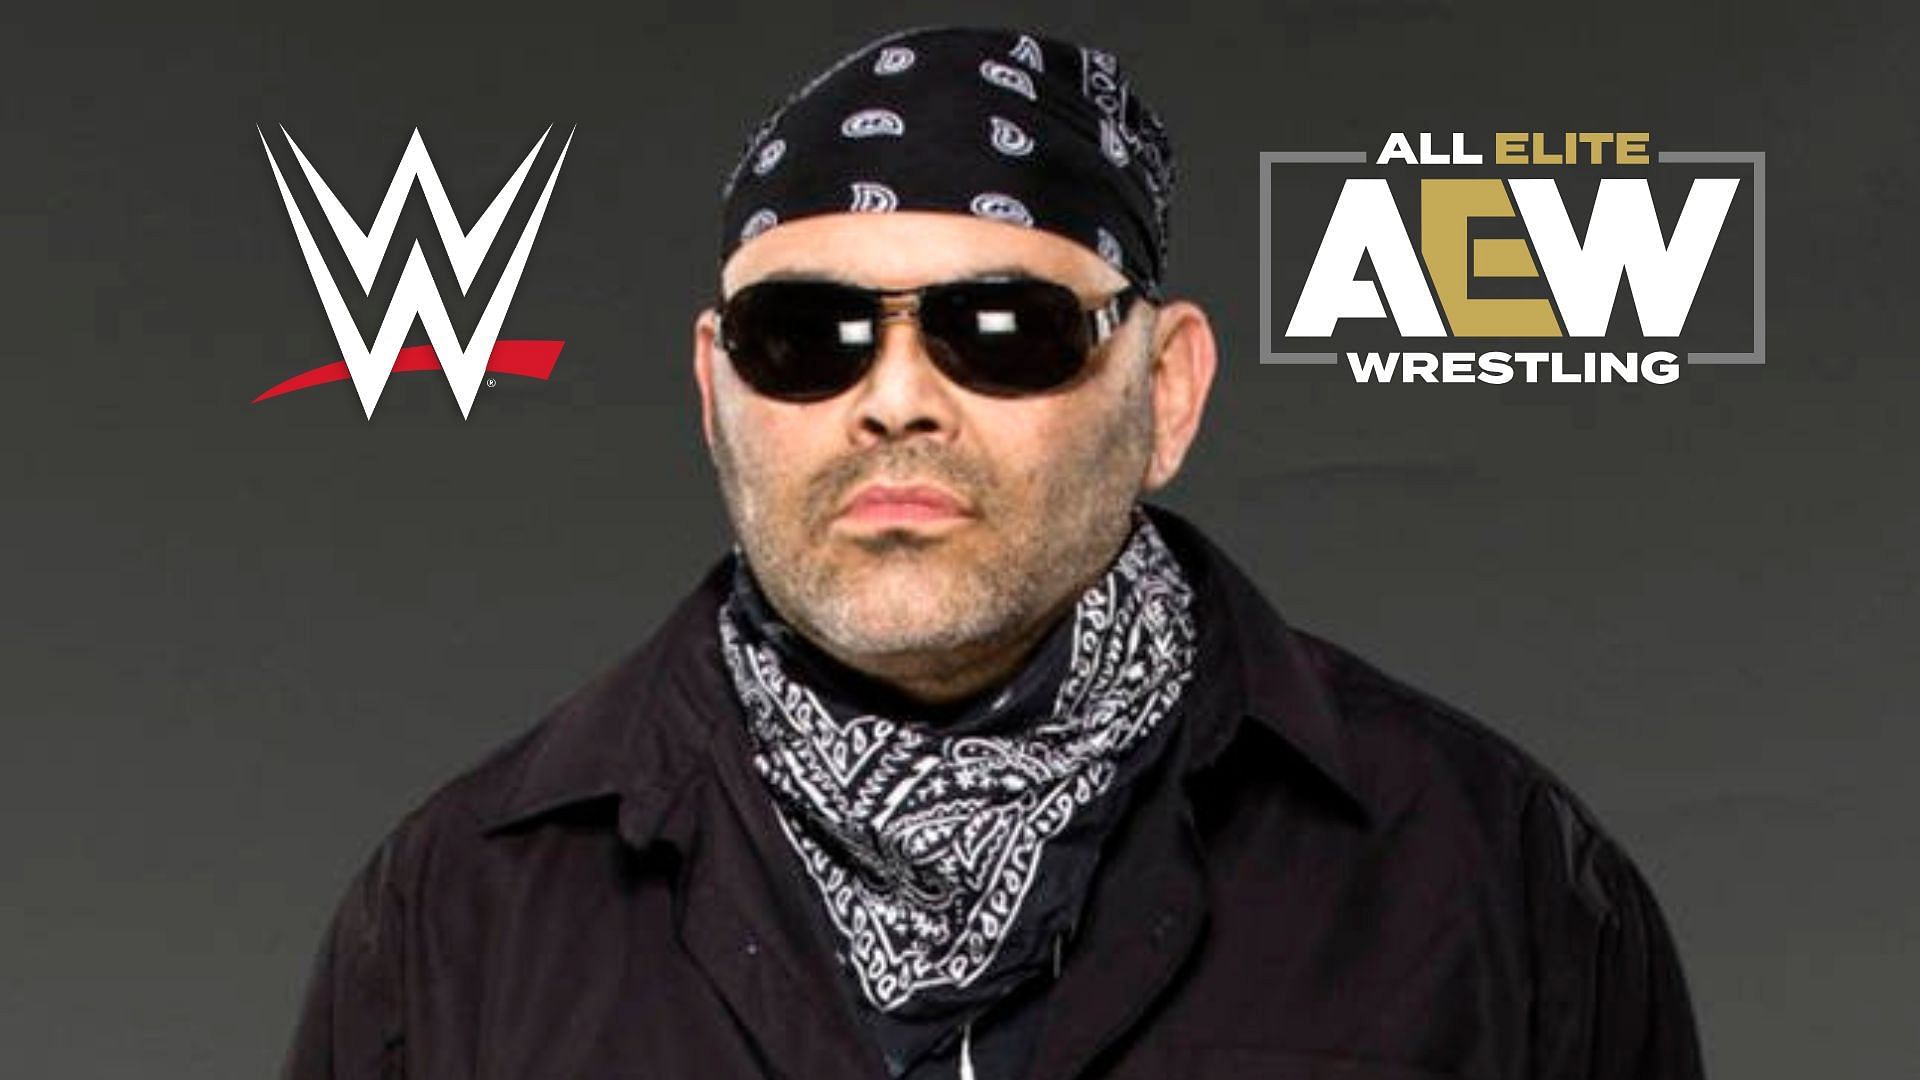 Konnan feels like an AEW star was better off in WWE